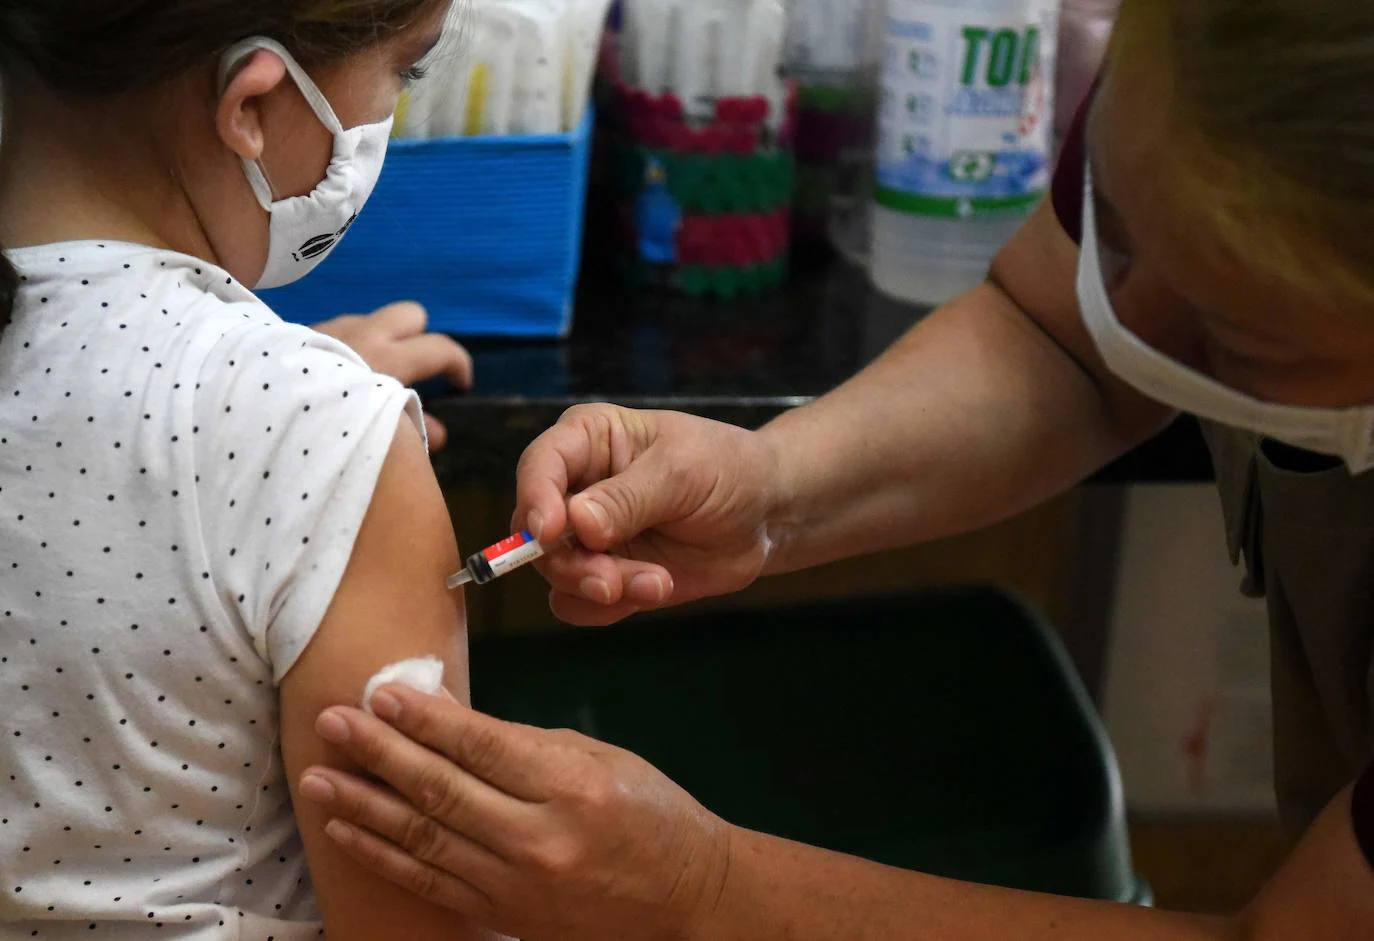 Osakidetza abre el martes la cita para vacunar a los niños de 9 a 11 años